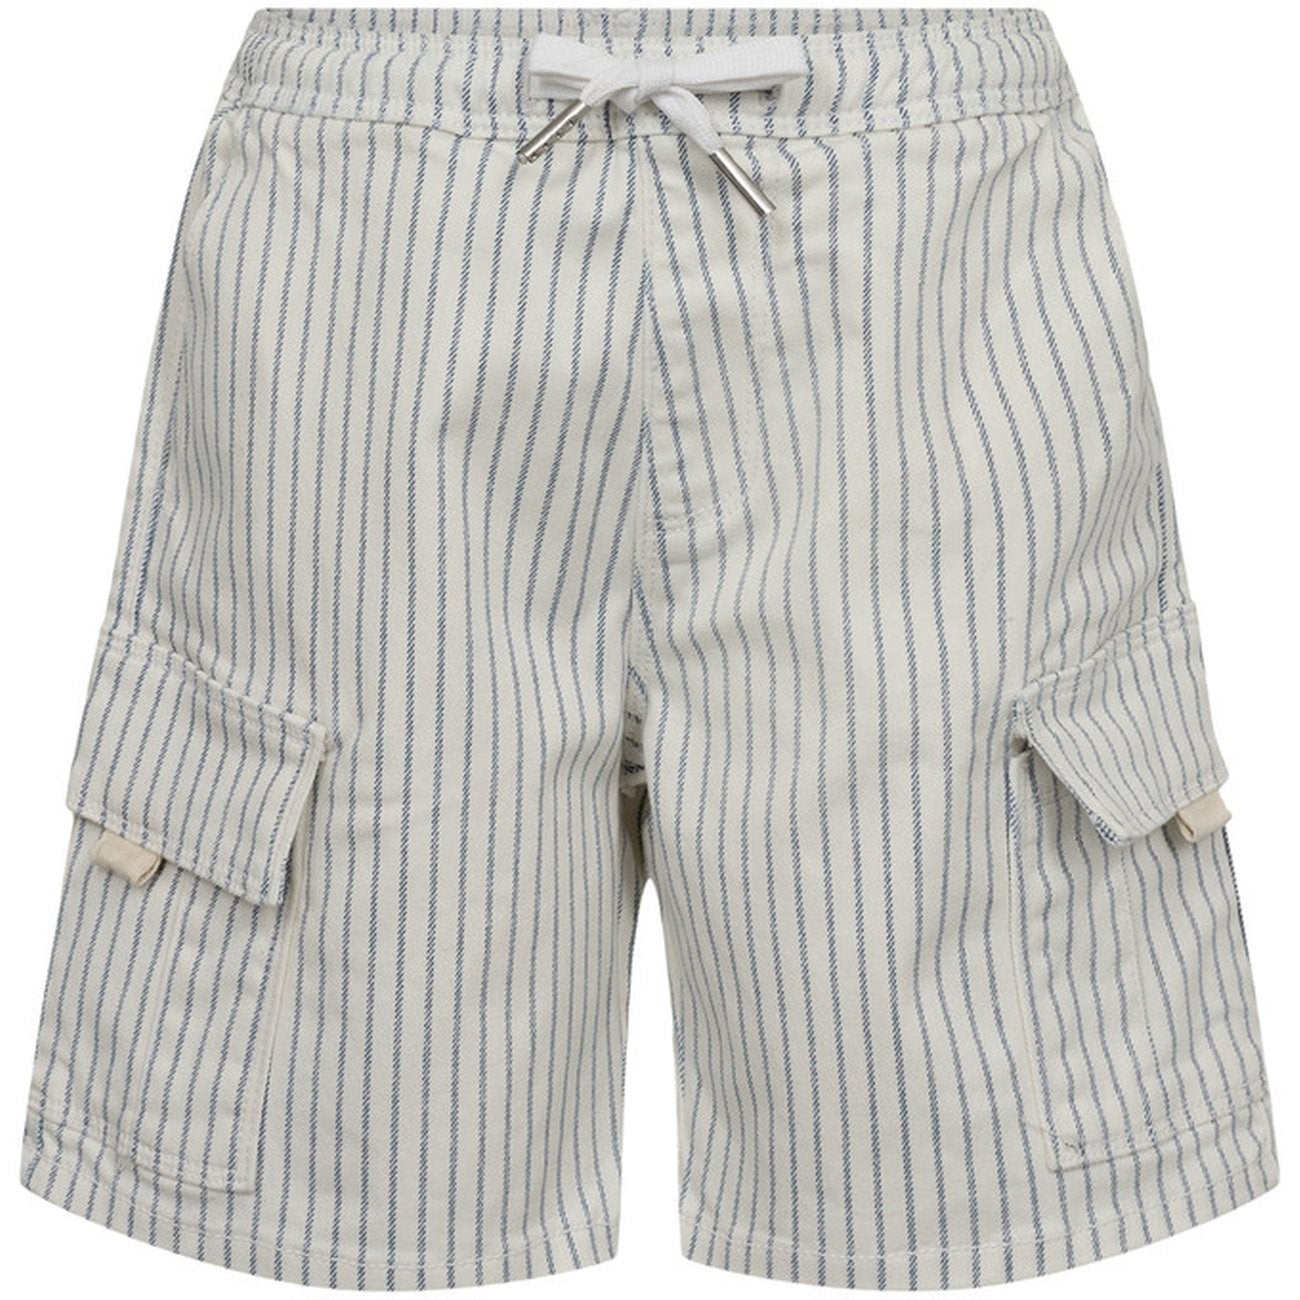 Sofie Schnoor Blue Striped Shorts